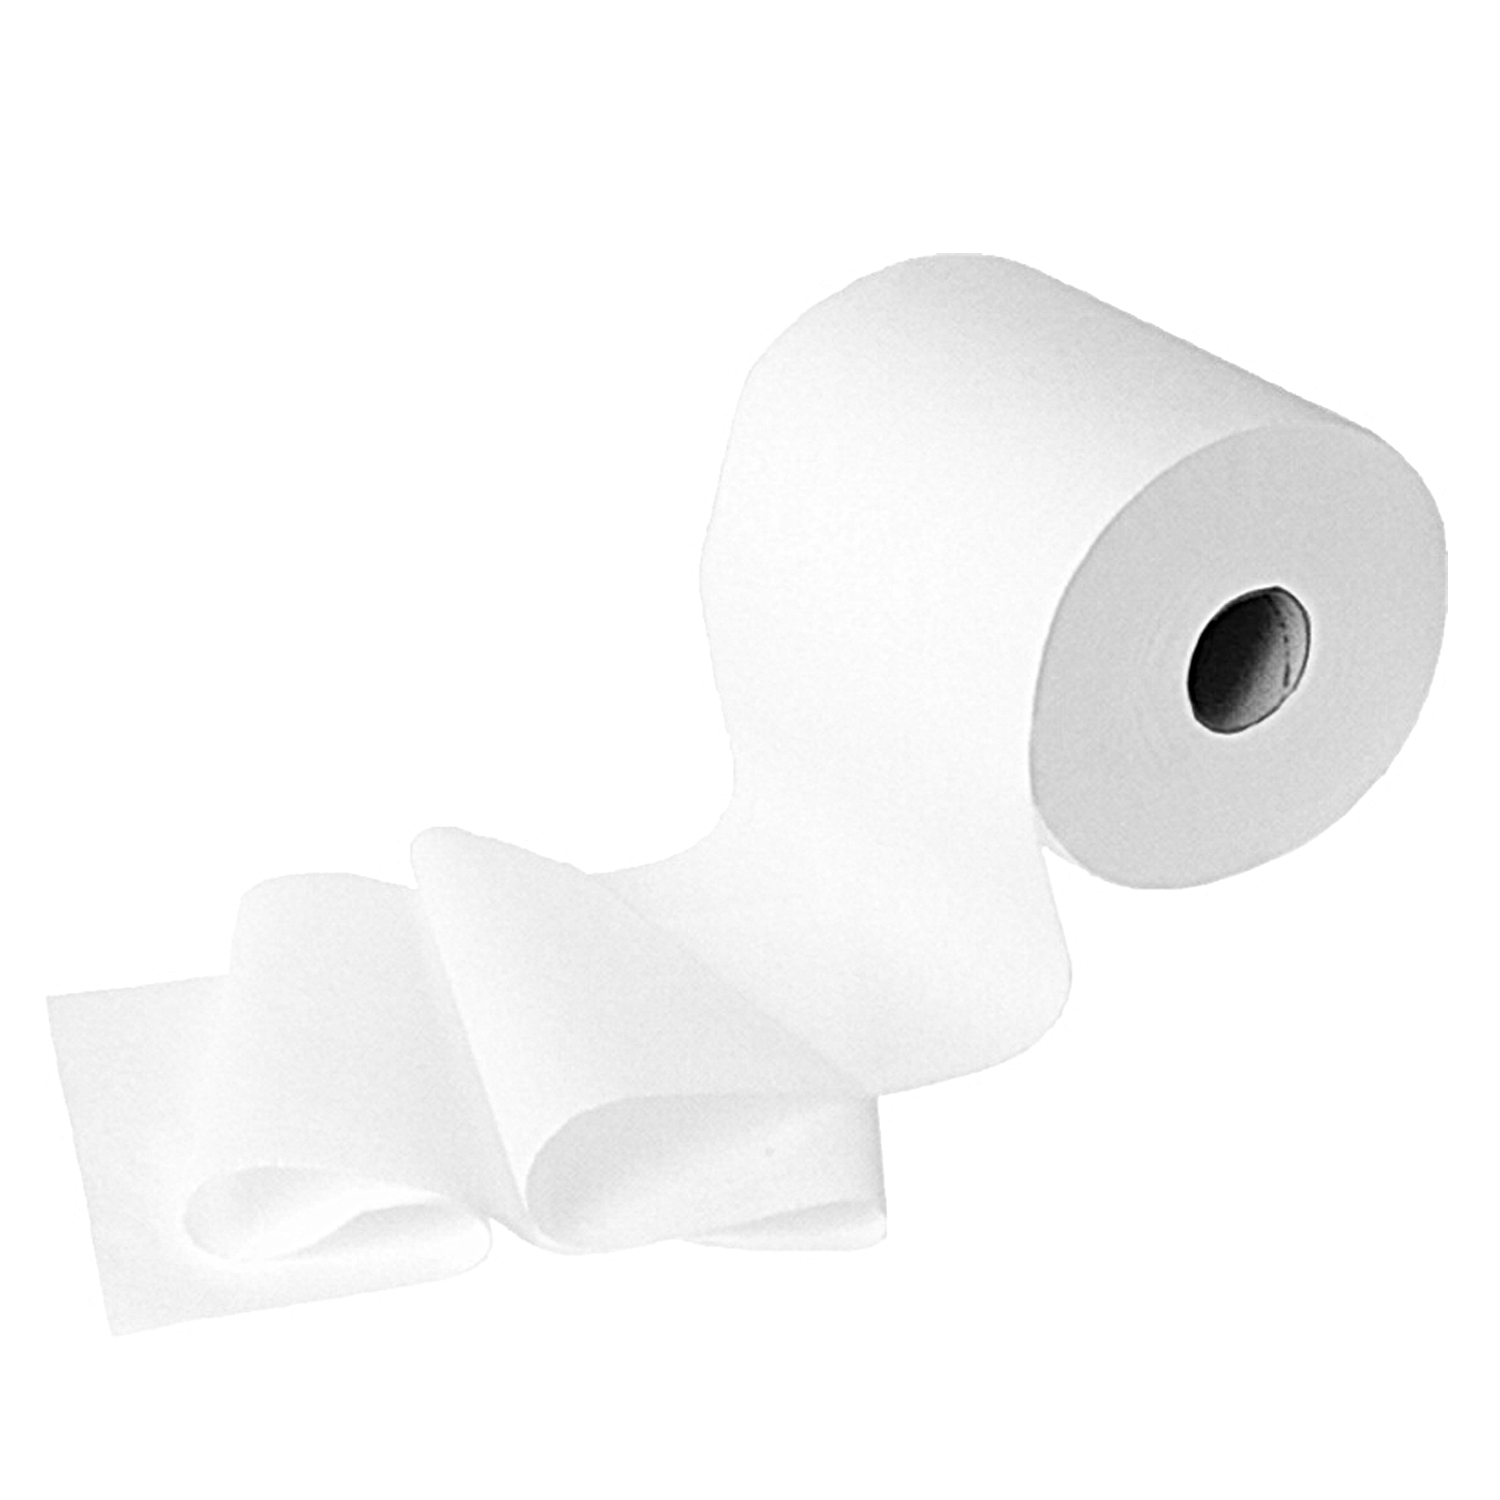 Handtuchrolle (Tissue) 3-lagig weiß 18cm 20cm x 100m - 6 Stück